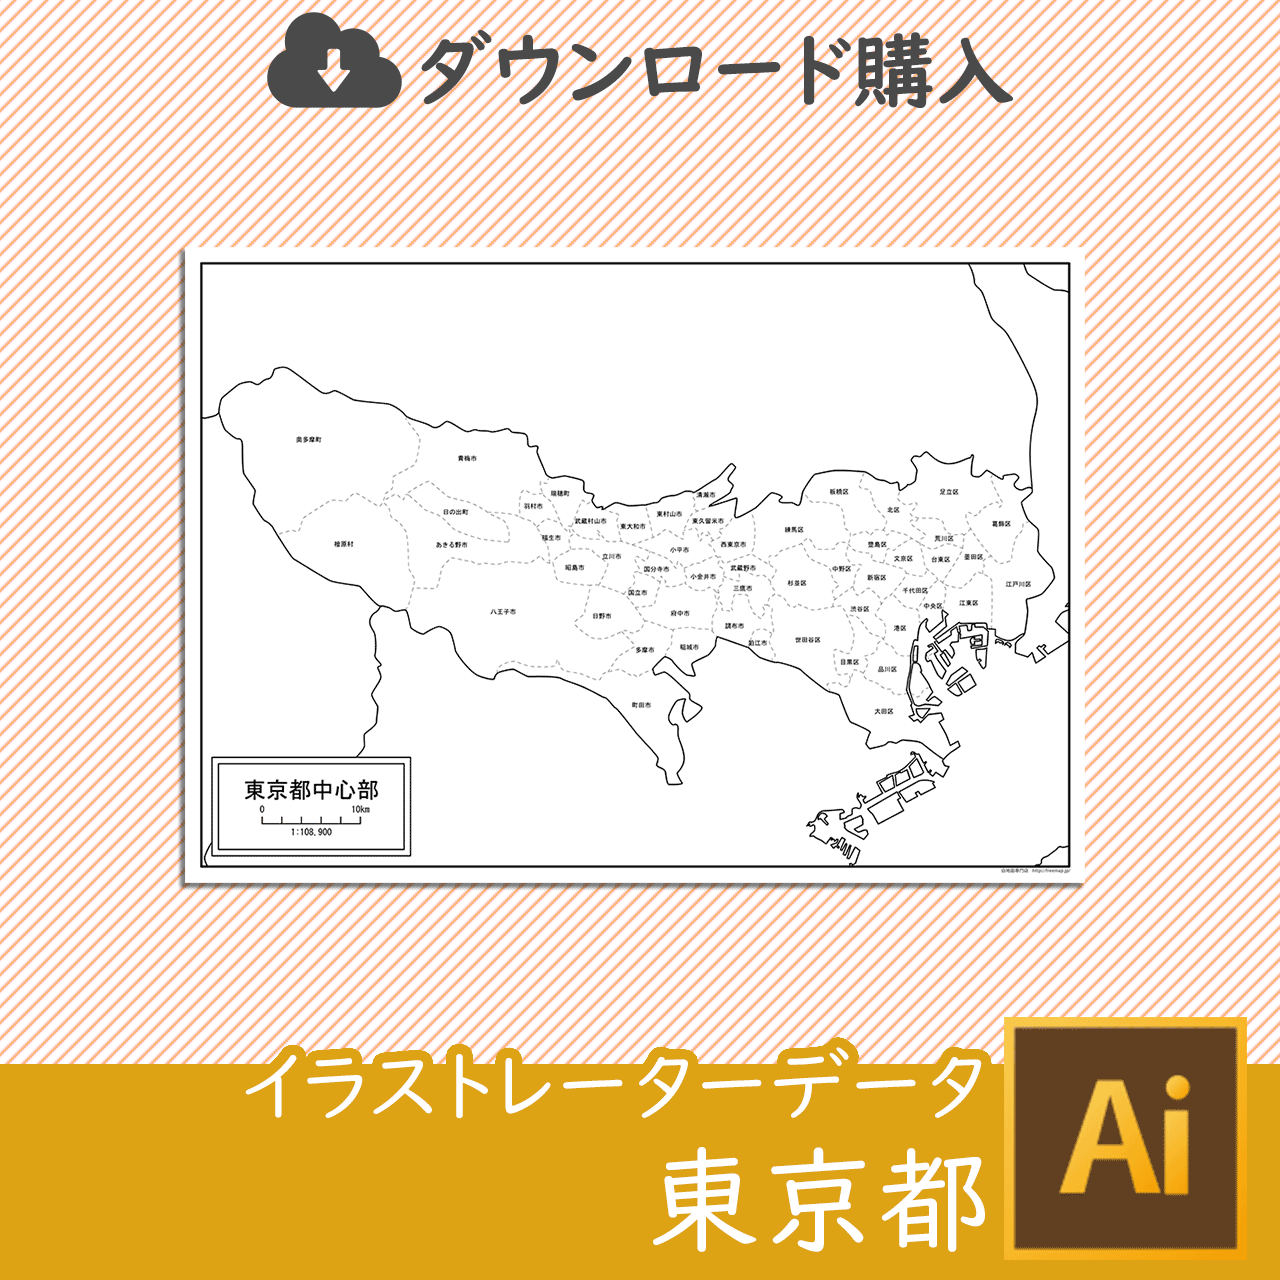 東京都中心部の白地図のサムネイル